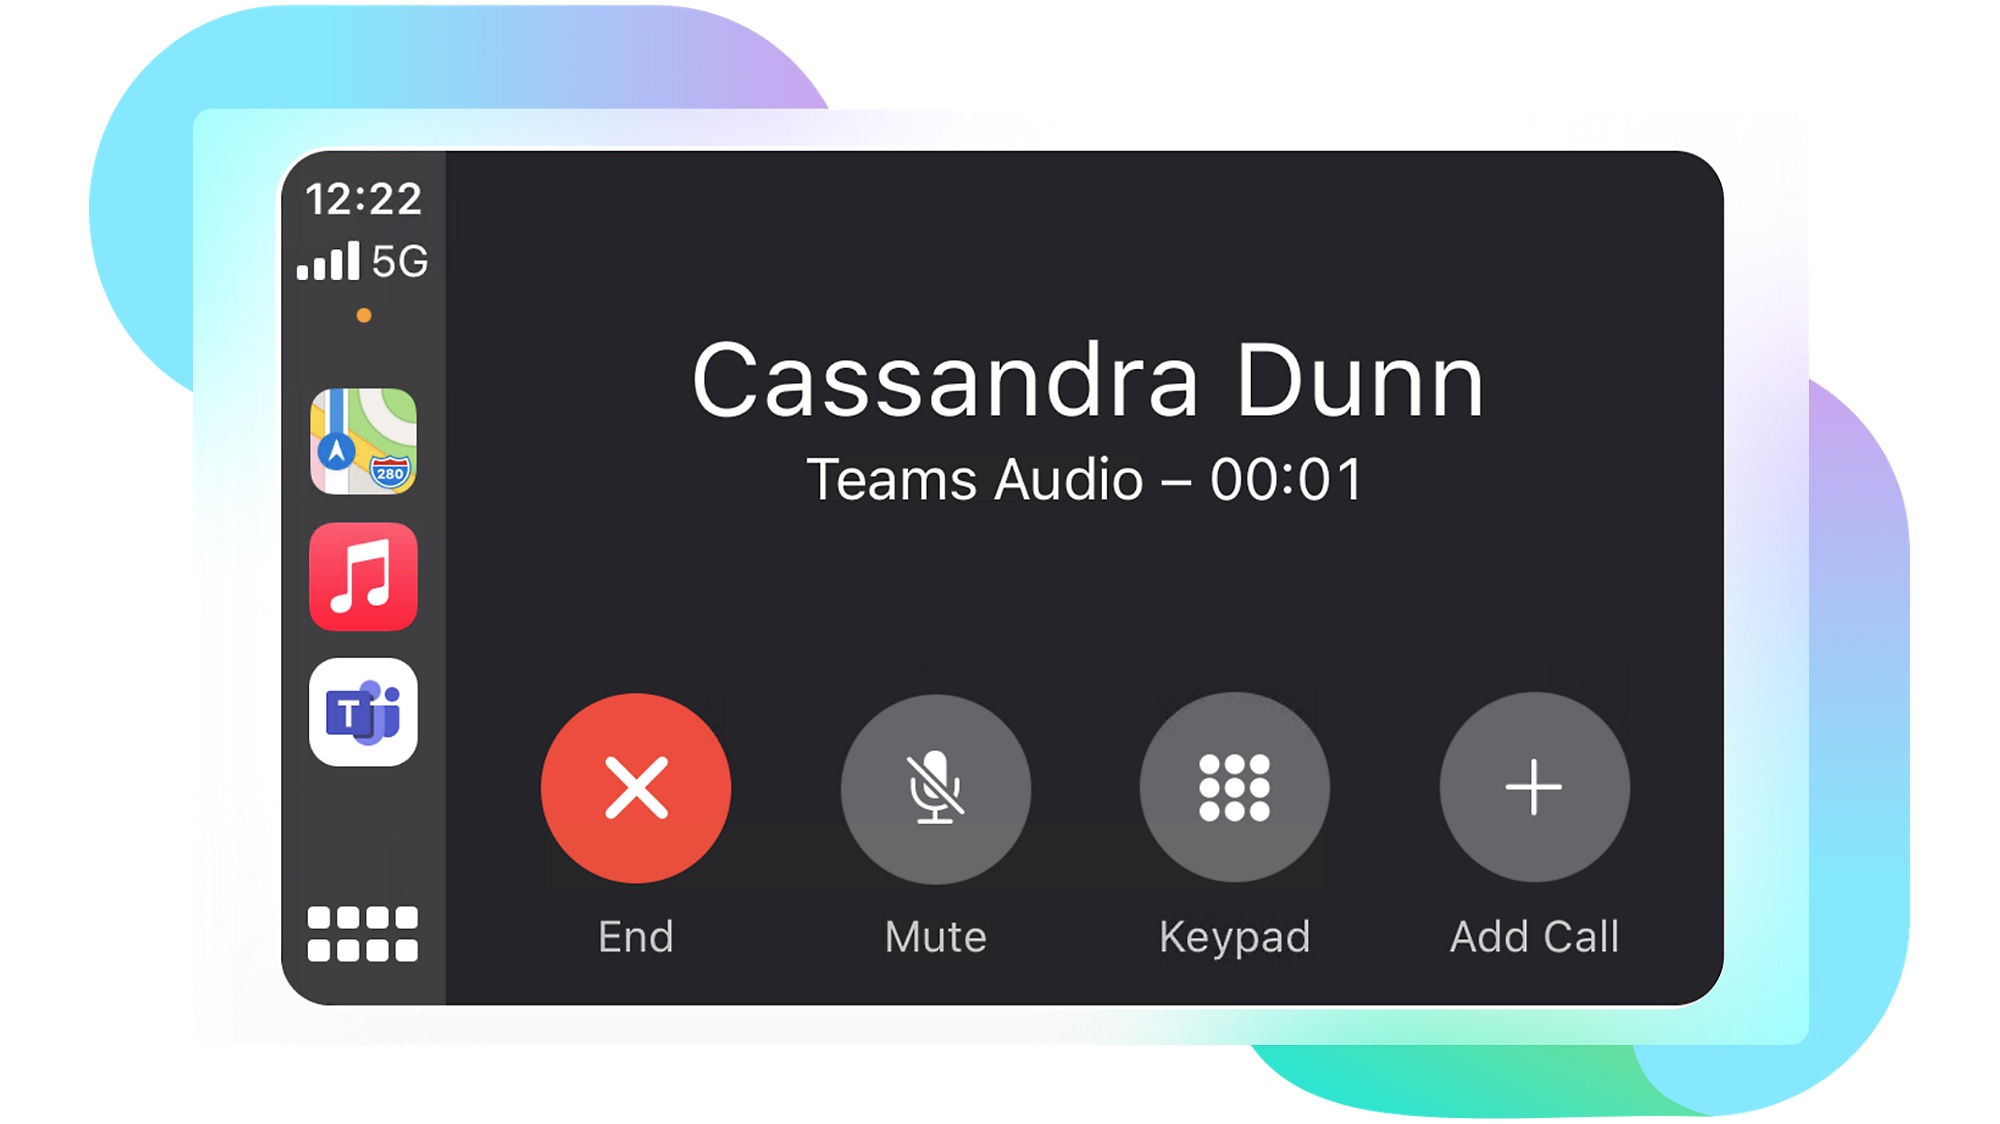 La vista de Apple CarPlay de una llamada en curso en Teams